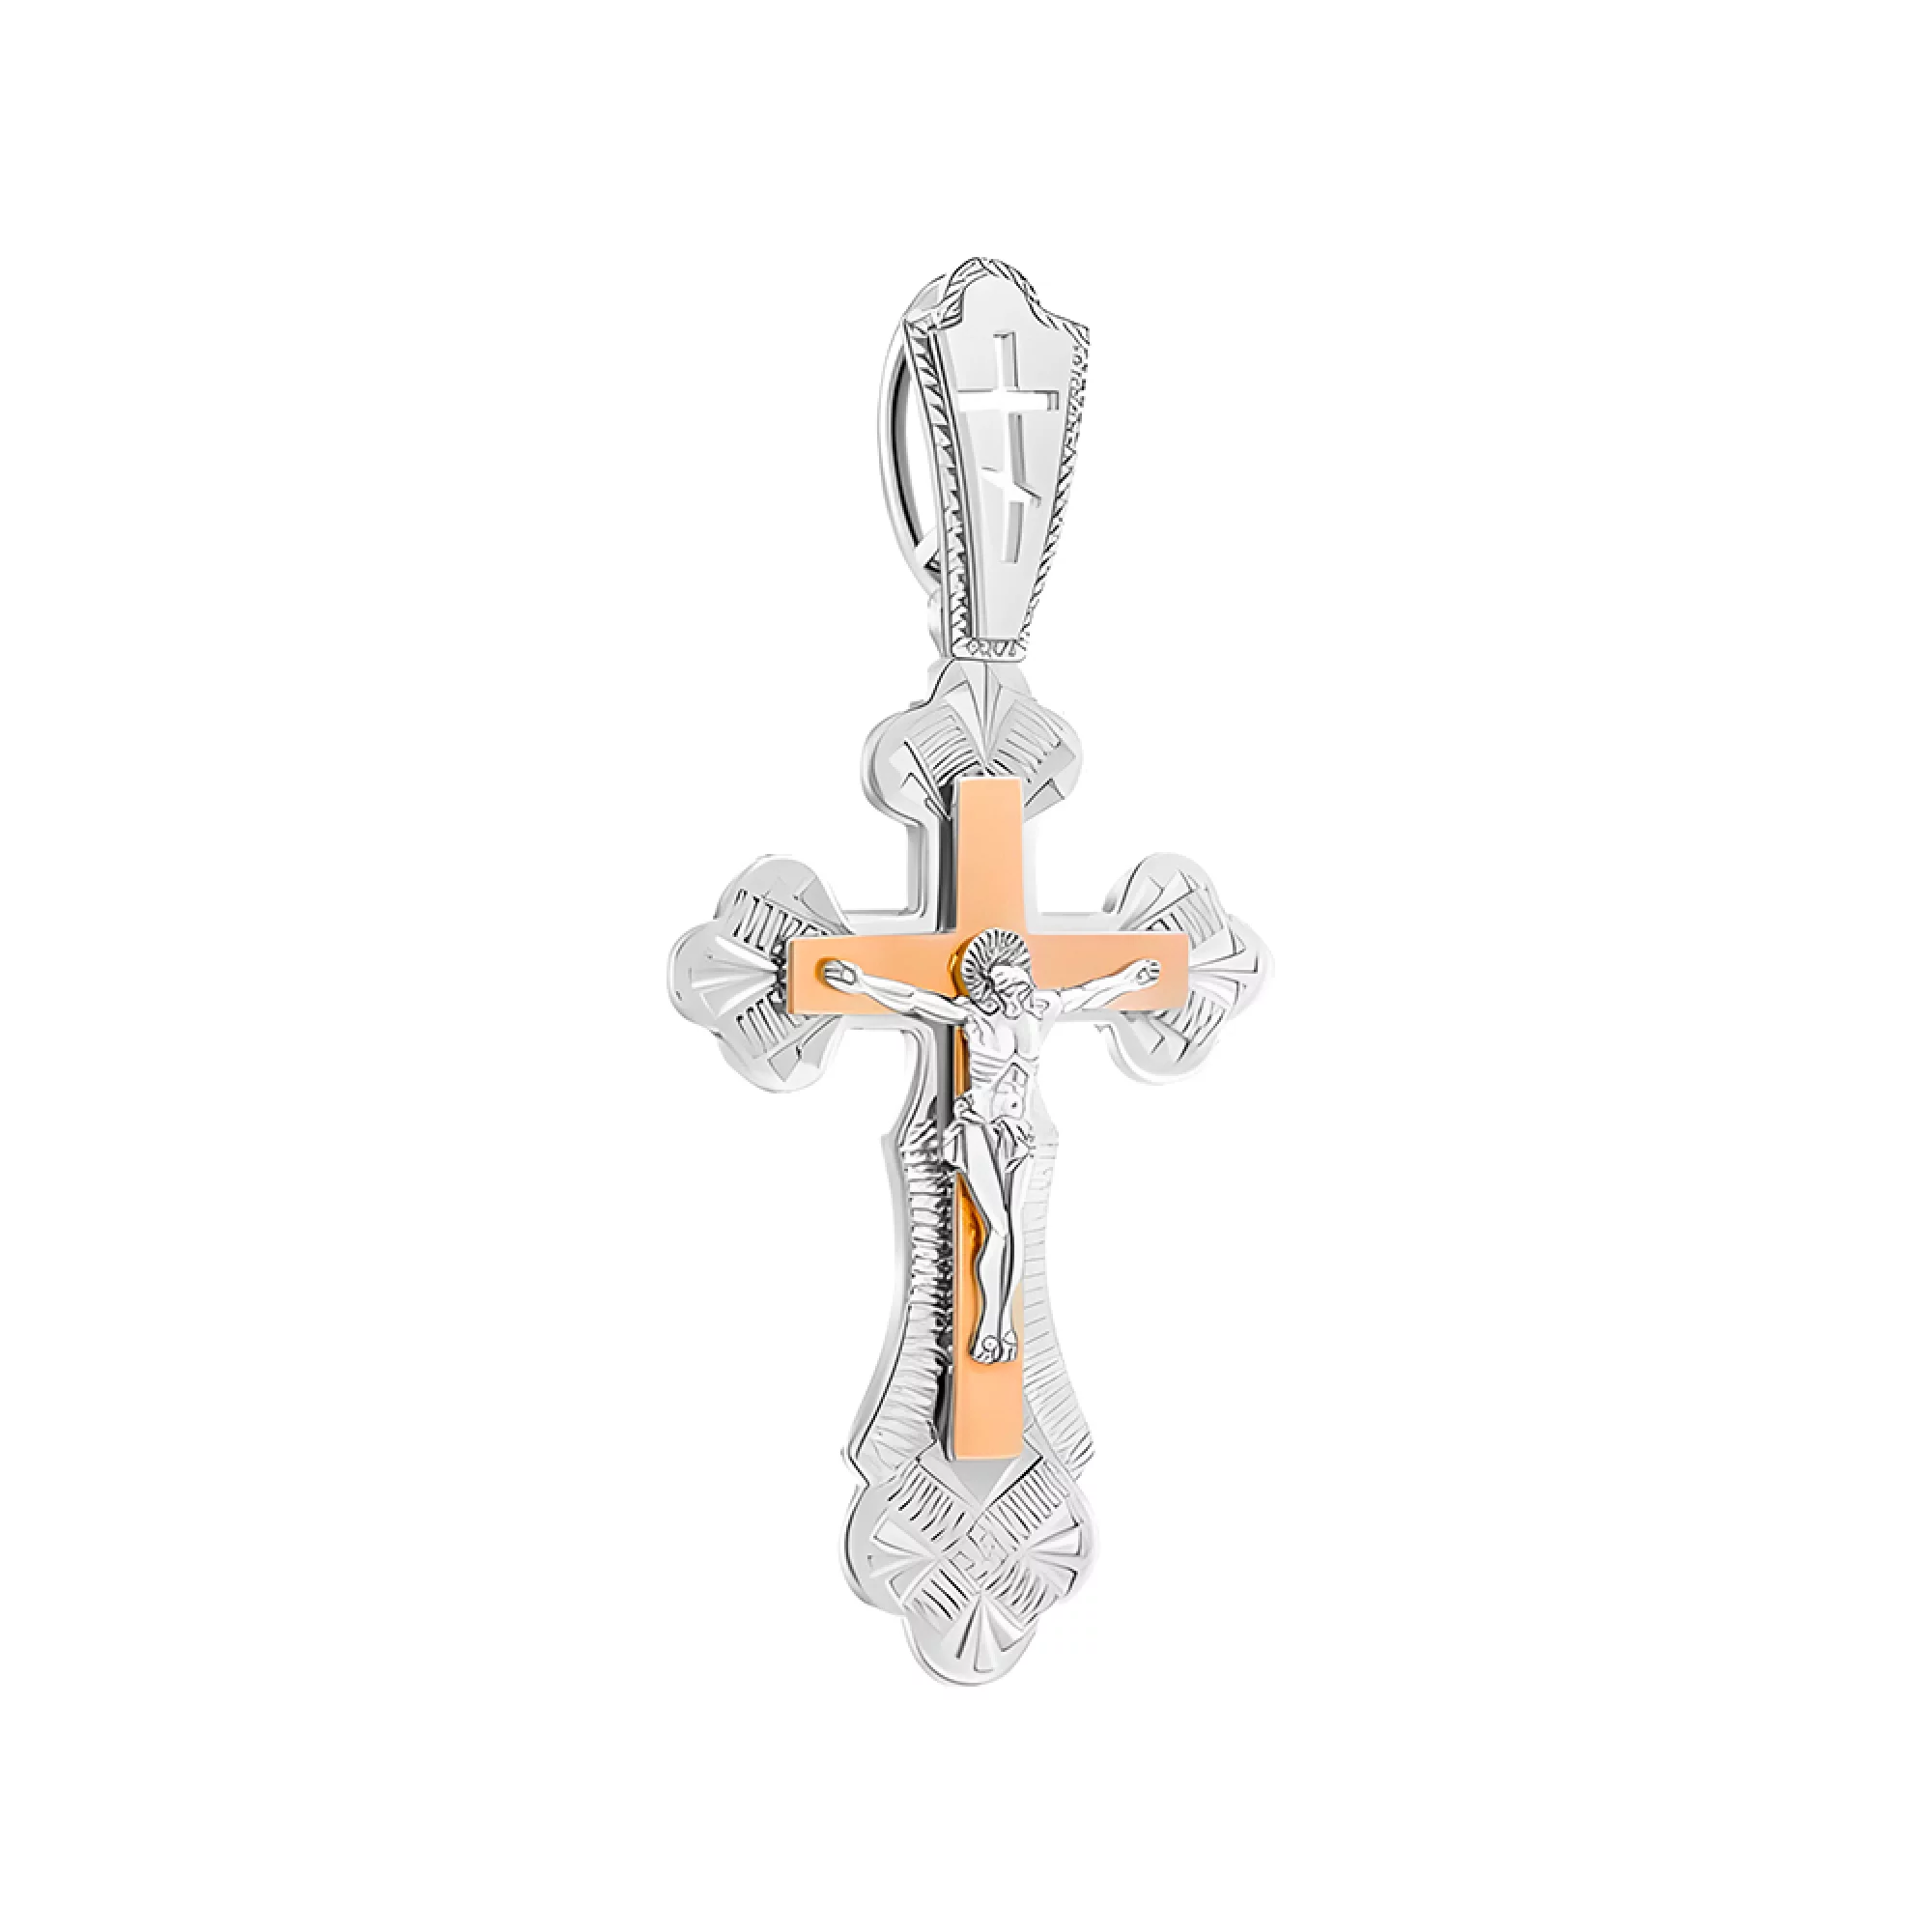 Срібний хрестик з позолотою - 383515 – зображення 1